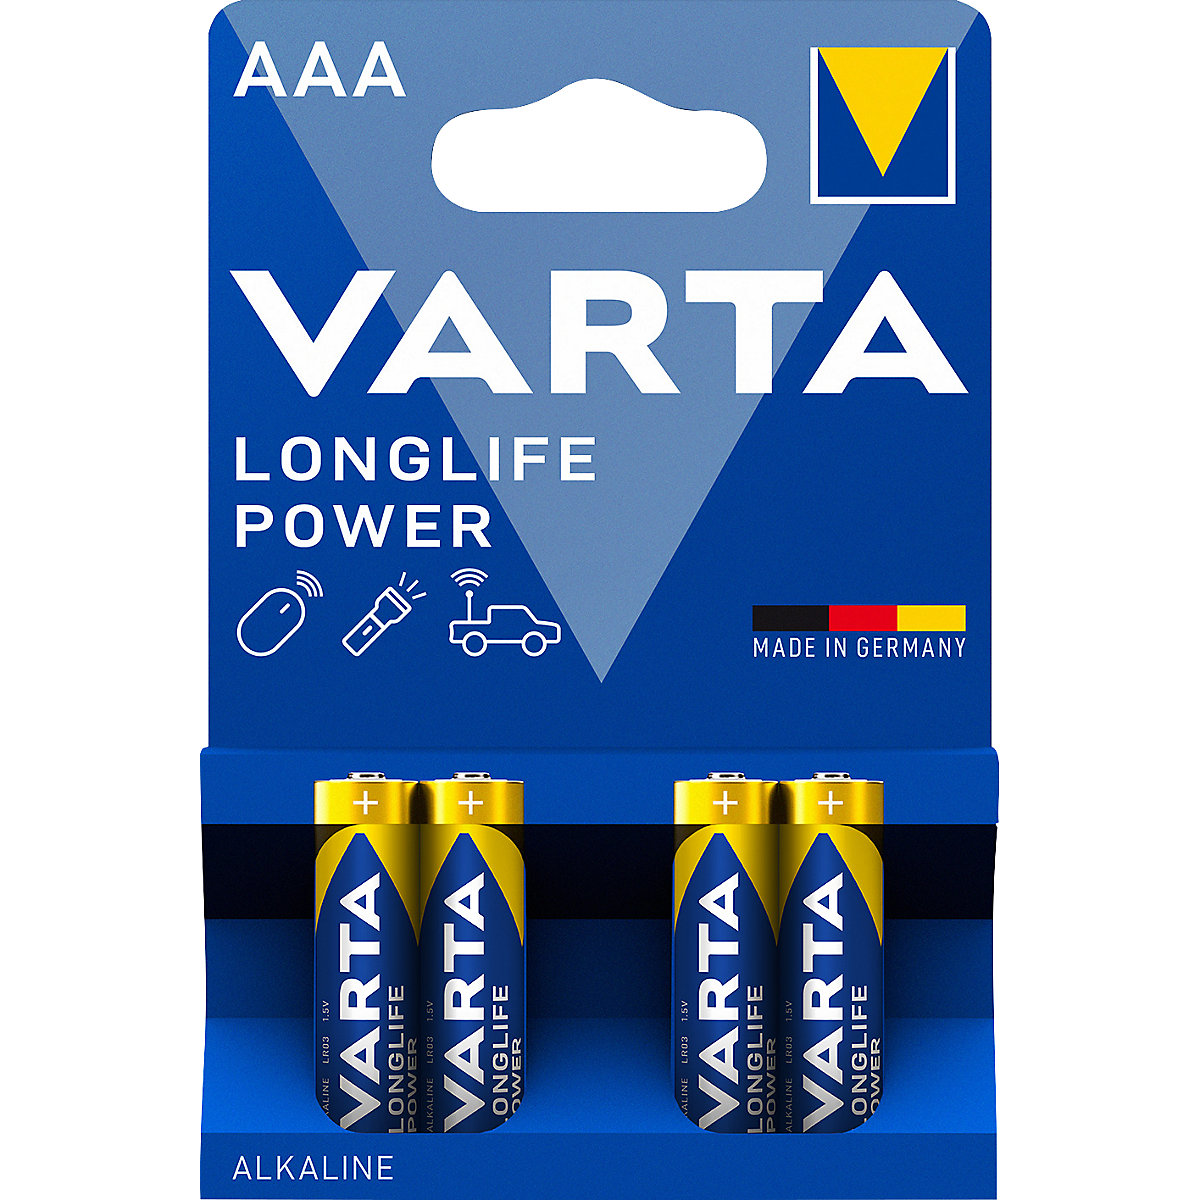 Batteria LONGLIFE Power - VARTA